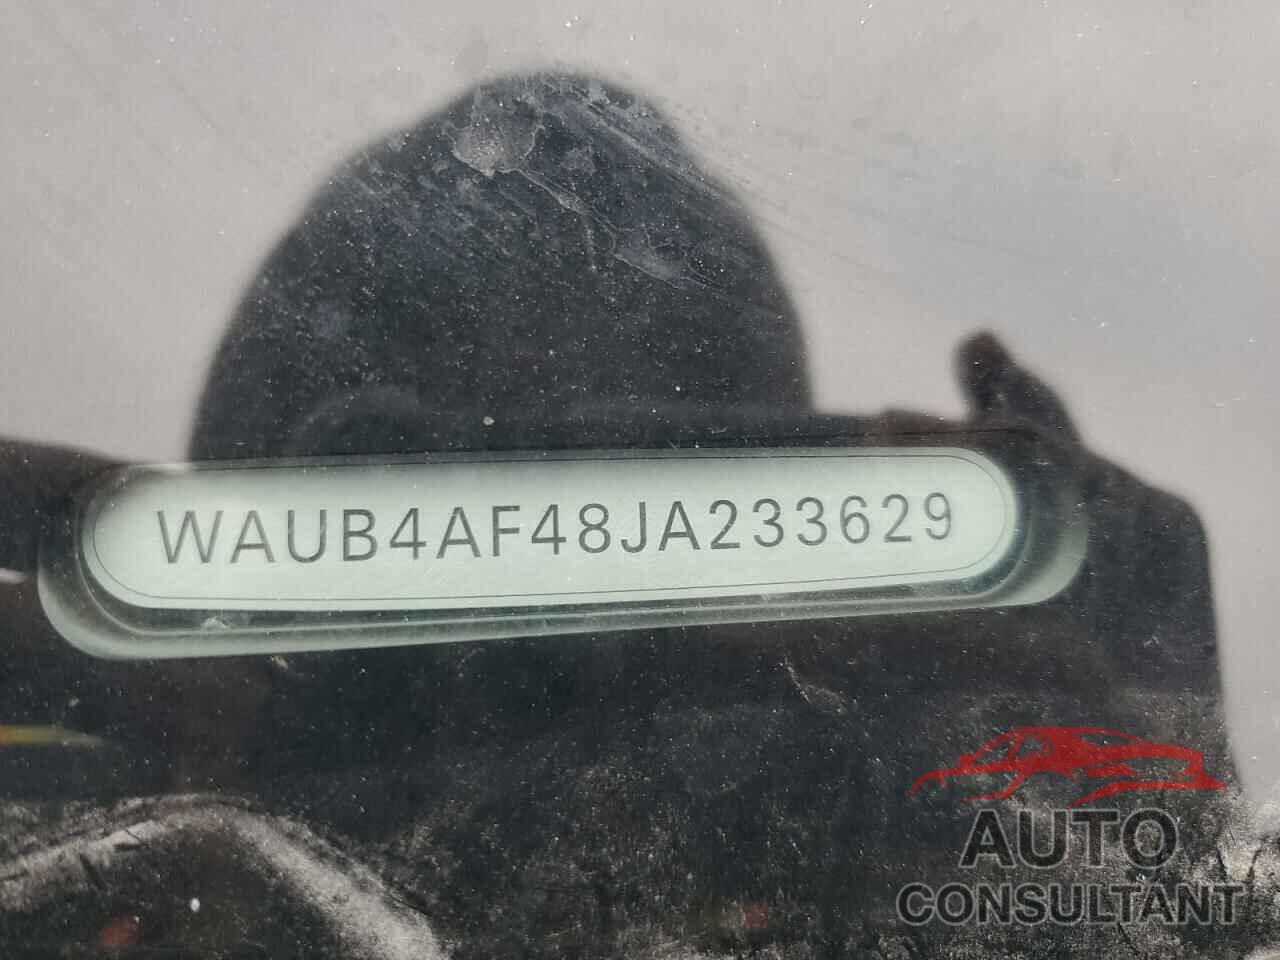 AUDI S4/RS4 2018 - WAUB4AF48JA233629